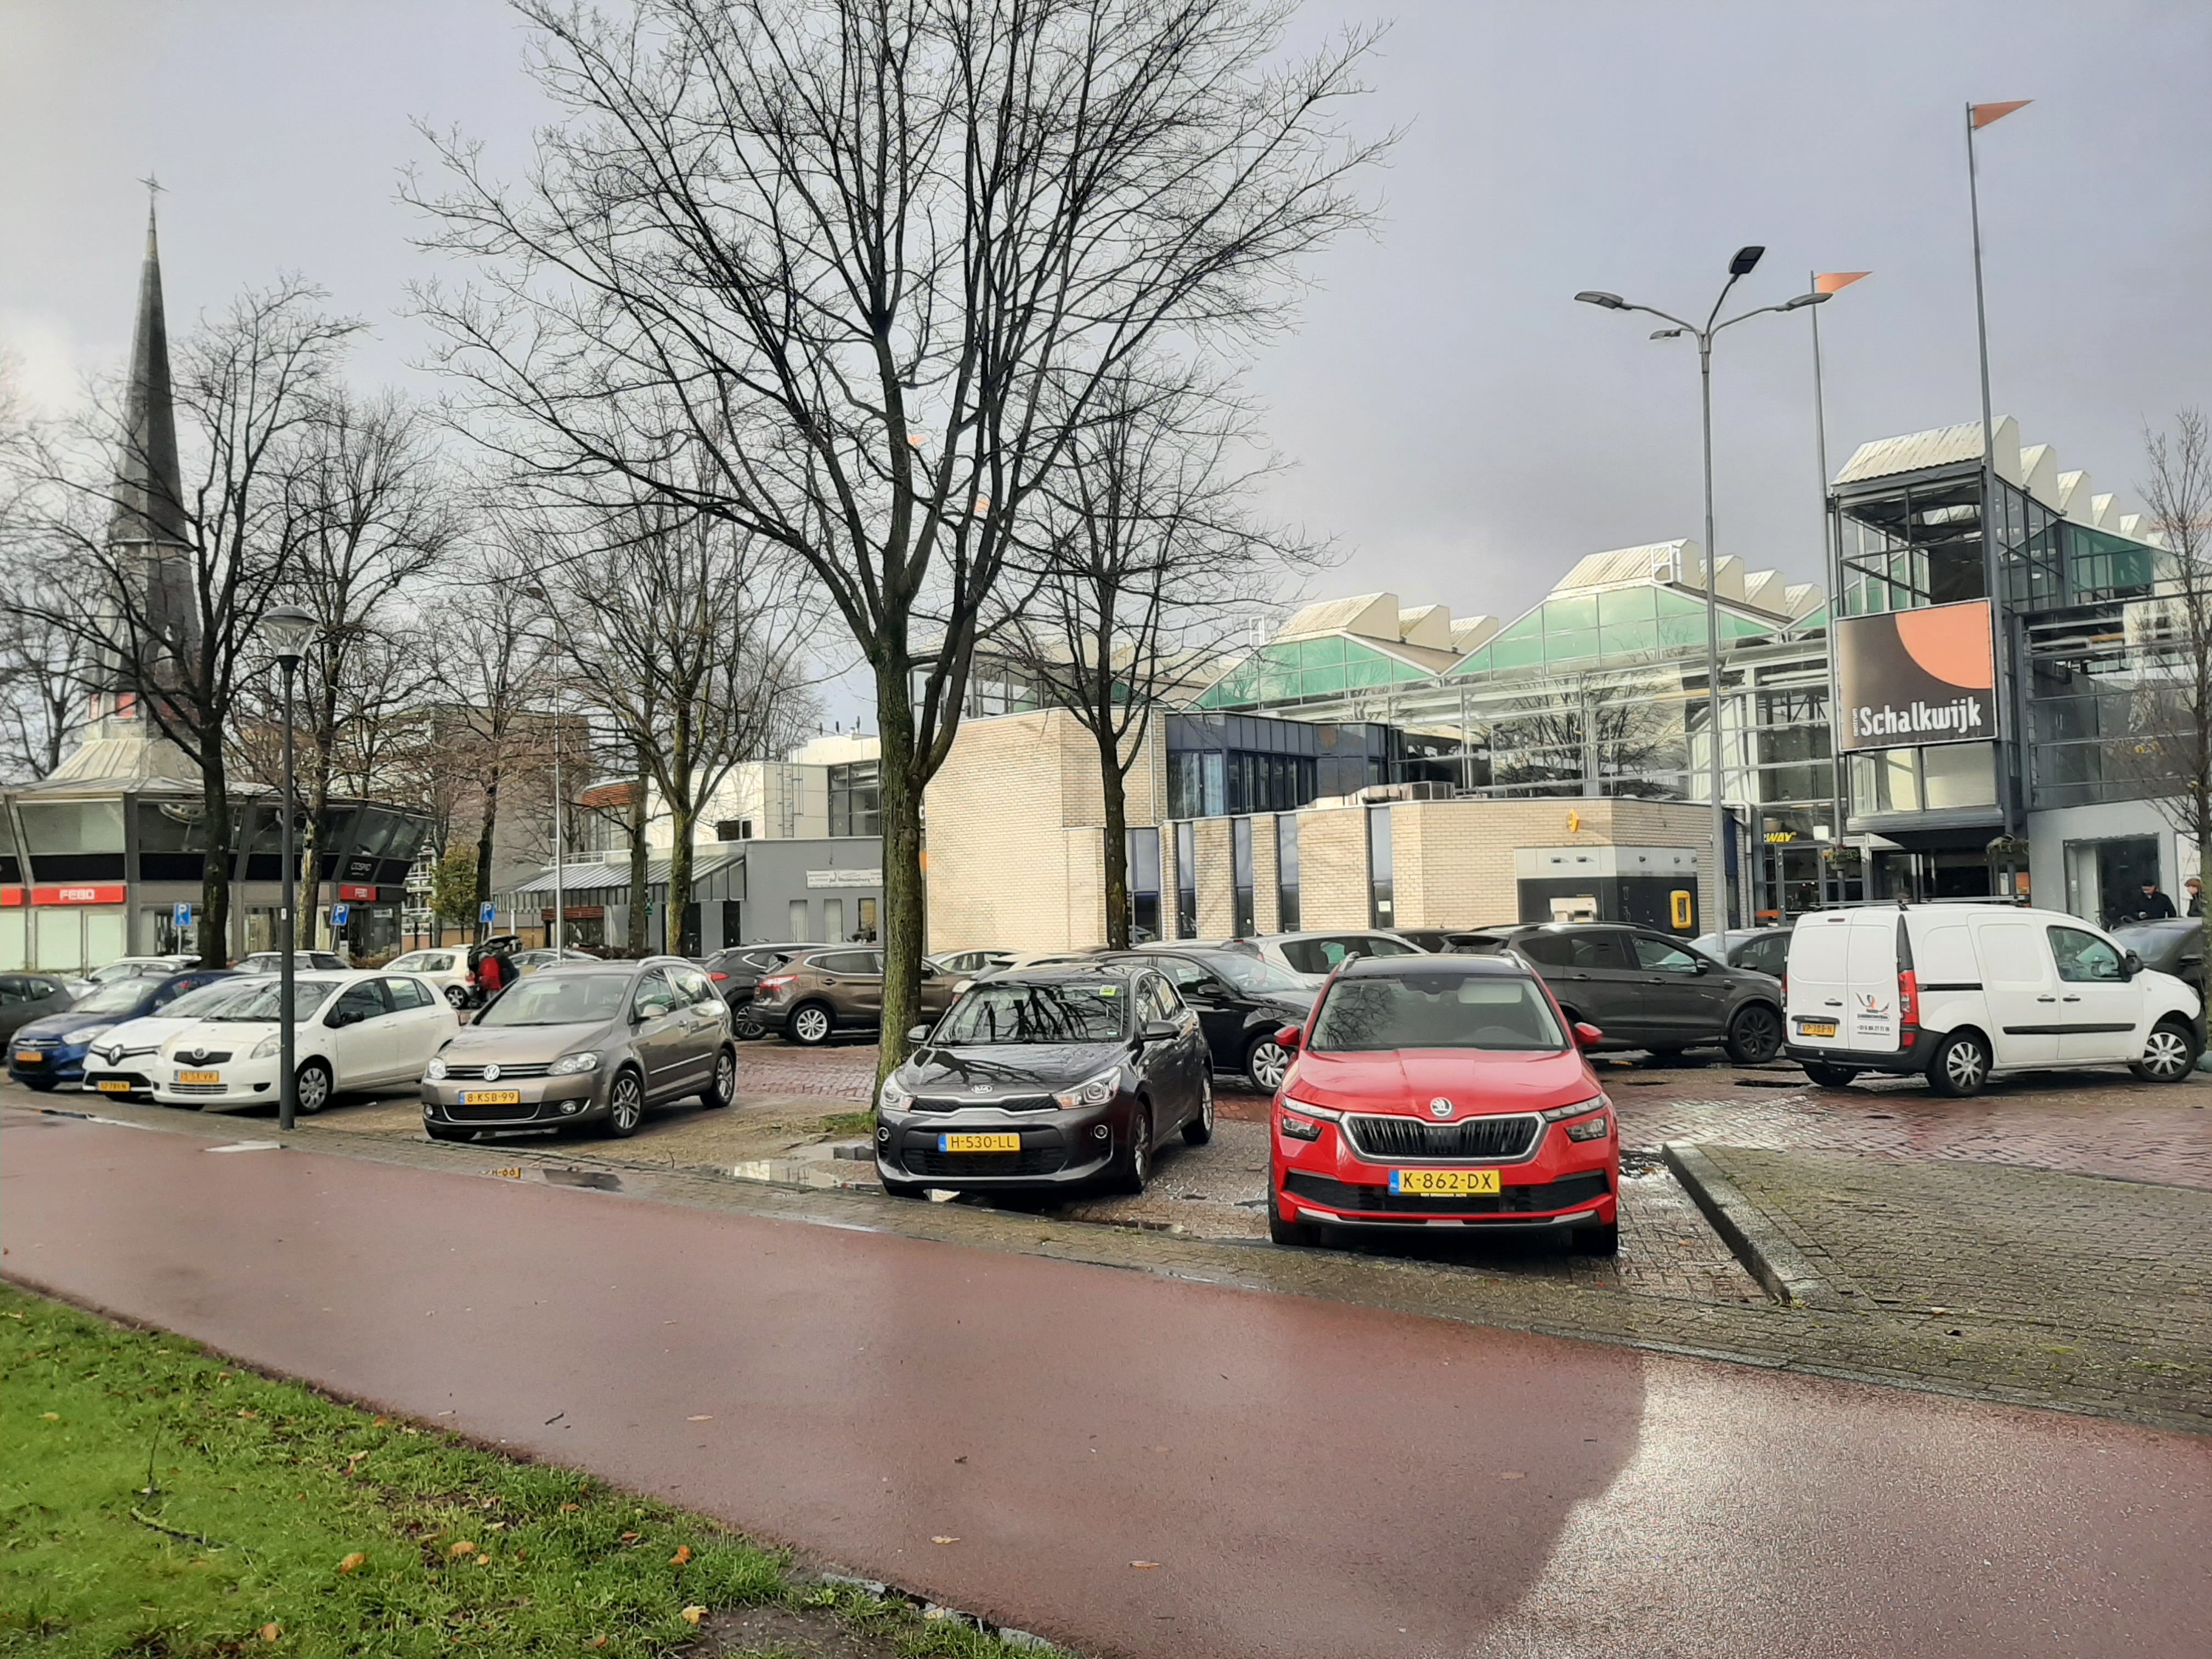 Haarlem, Schalkwijk - II